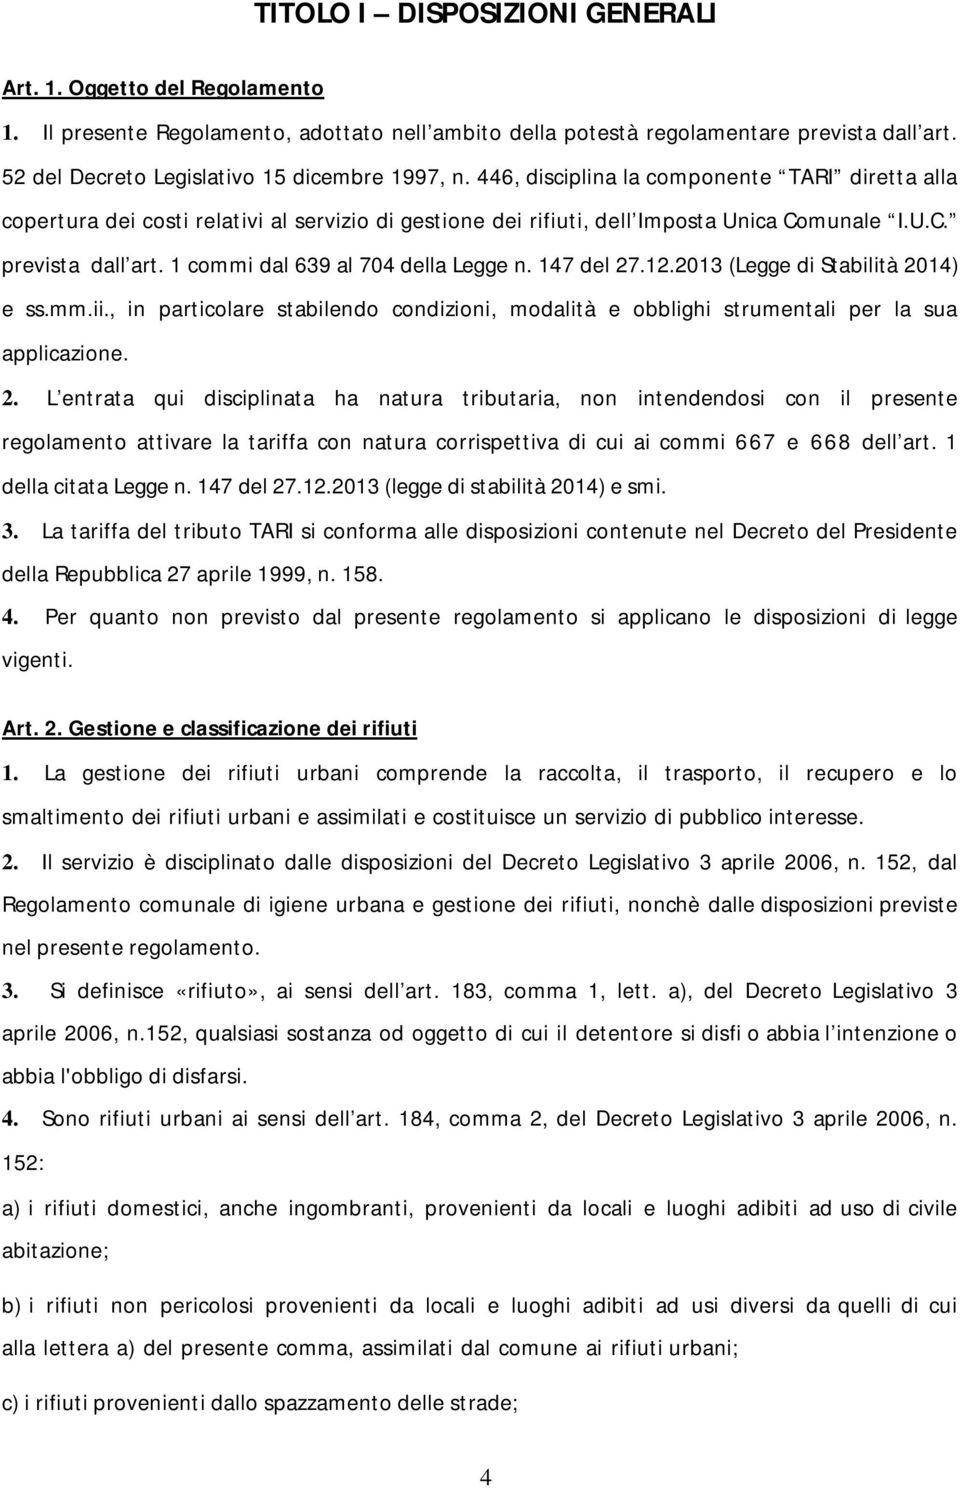 munale I.U.C. prevista dall art. 1 commi dal 639 al 704 della Legge n. 147 del 27.12.2013 (Legge di Stabilità 2014) e ss.mm.ii.